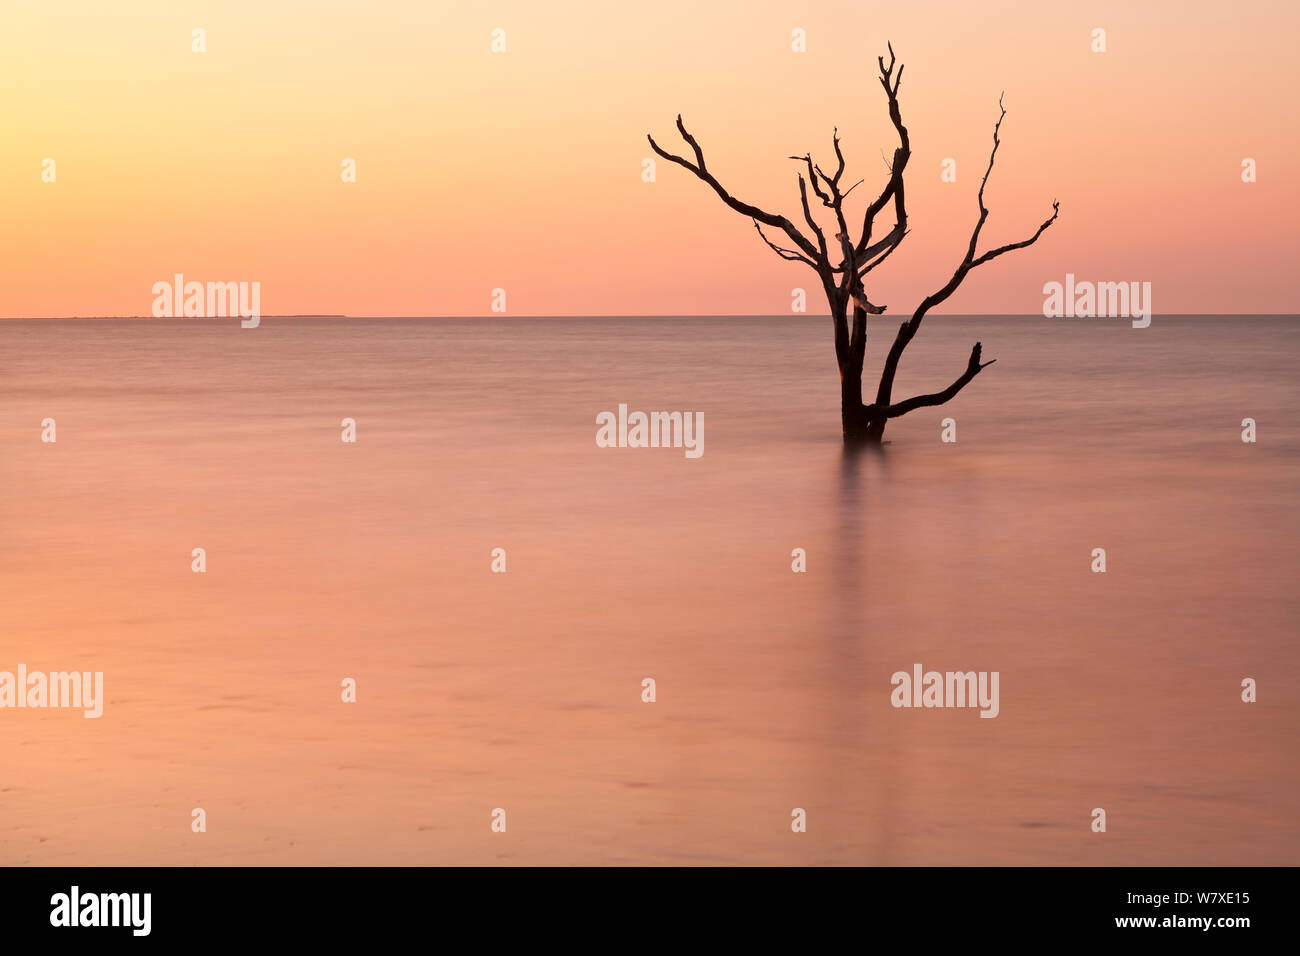 Toter Baum im Meer bei Sonnenaufgang an Boneyard Strand, Botany Bay Plantation Wildlife Management Area auf Edisto Island, South Carolina, USA. Ändern der Gezeiten haben sie umgewandelt, was einmal war der Wald in einem Strand. Stockfoto